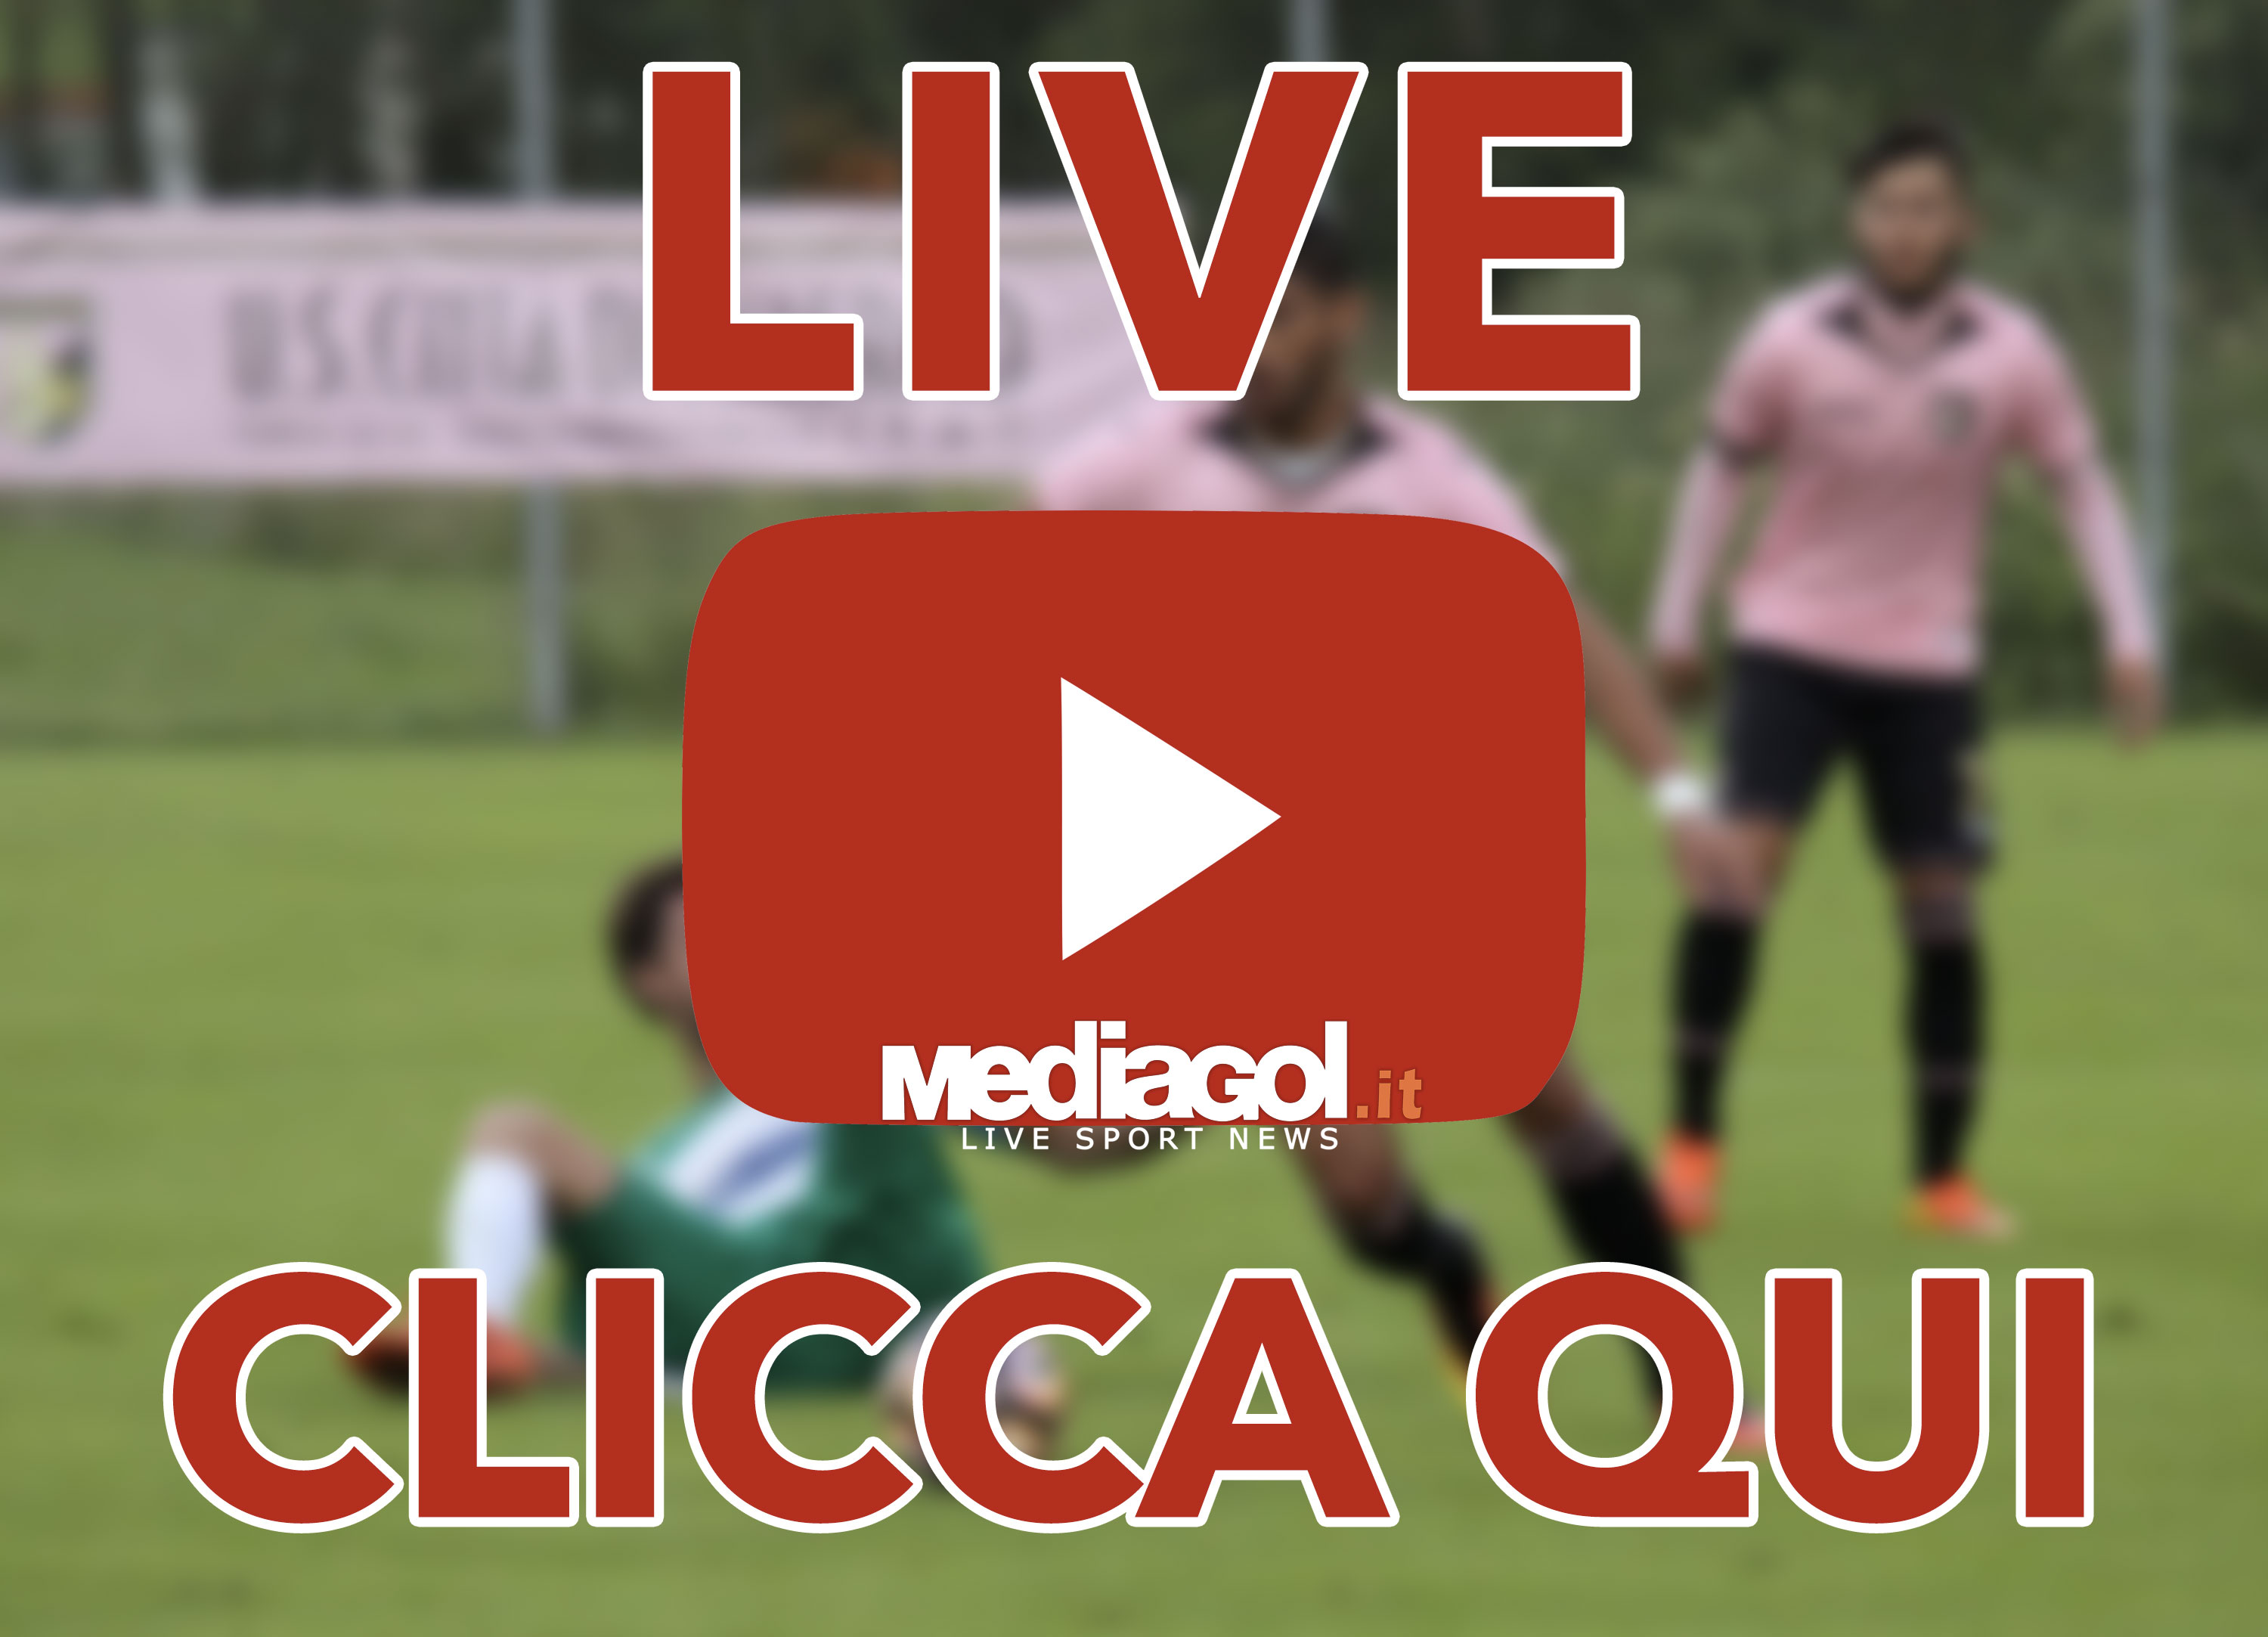 live2-radiocronaca-palermo-clicca-qui-mediagol